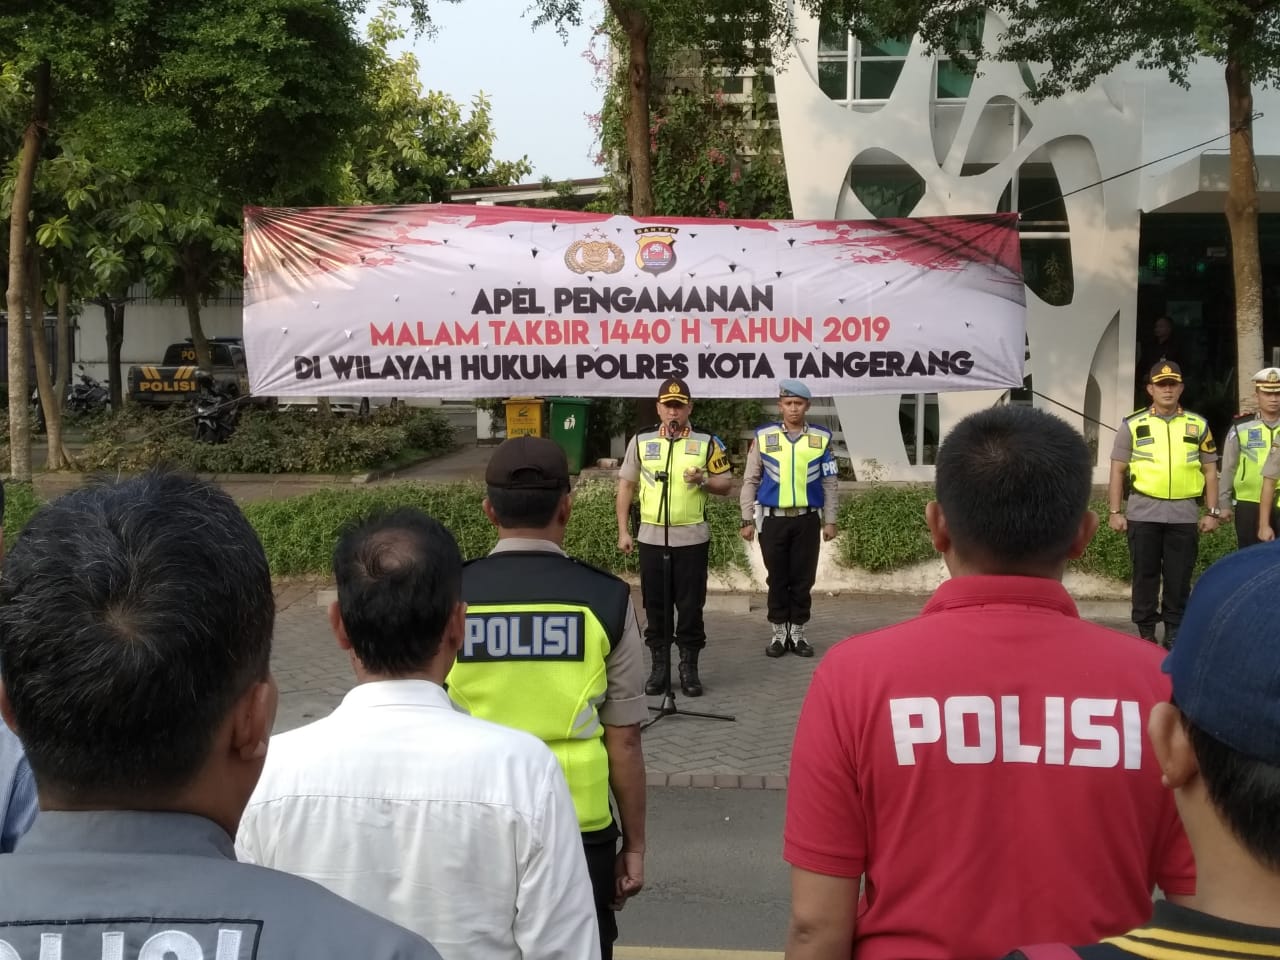 Apel pengamanan malam takbiran 1140 H Polresta Tangerang dibilangan Citra Raya, Panongan, Selasa (4/6/2019).